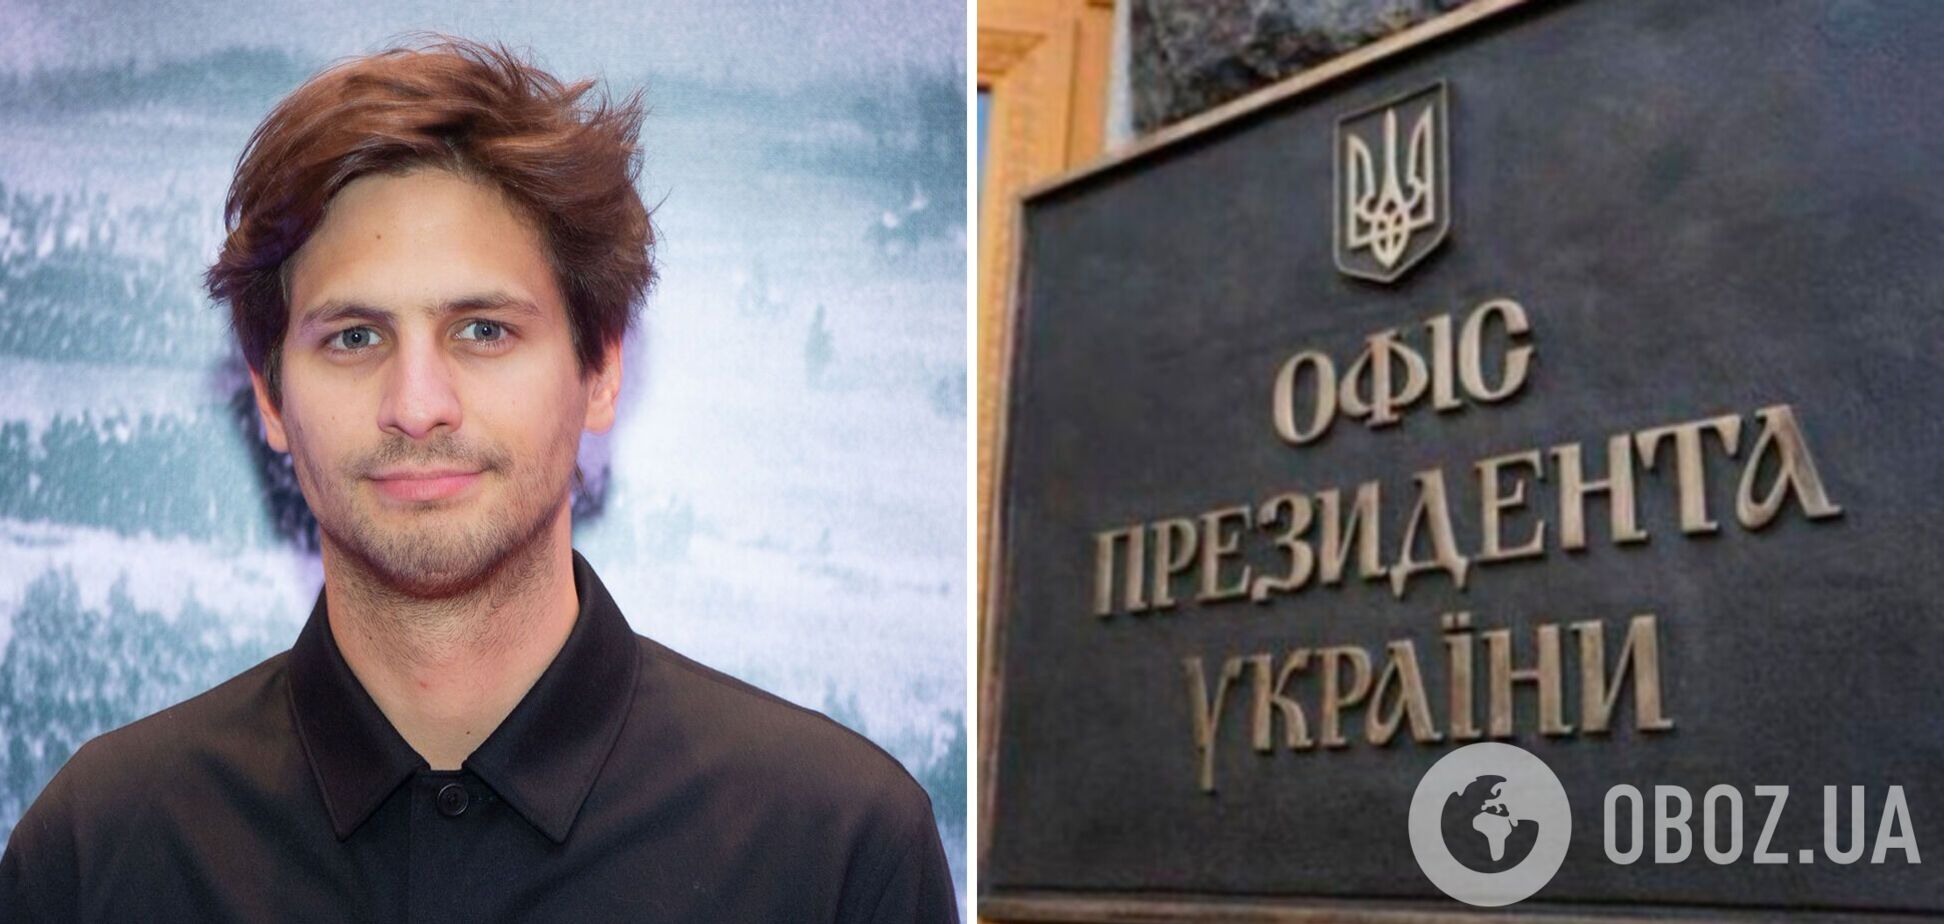 В ОП прокомментировали скандал вокруг российского режиссера Молочникова, приехавшего в Украину